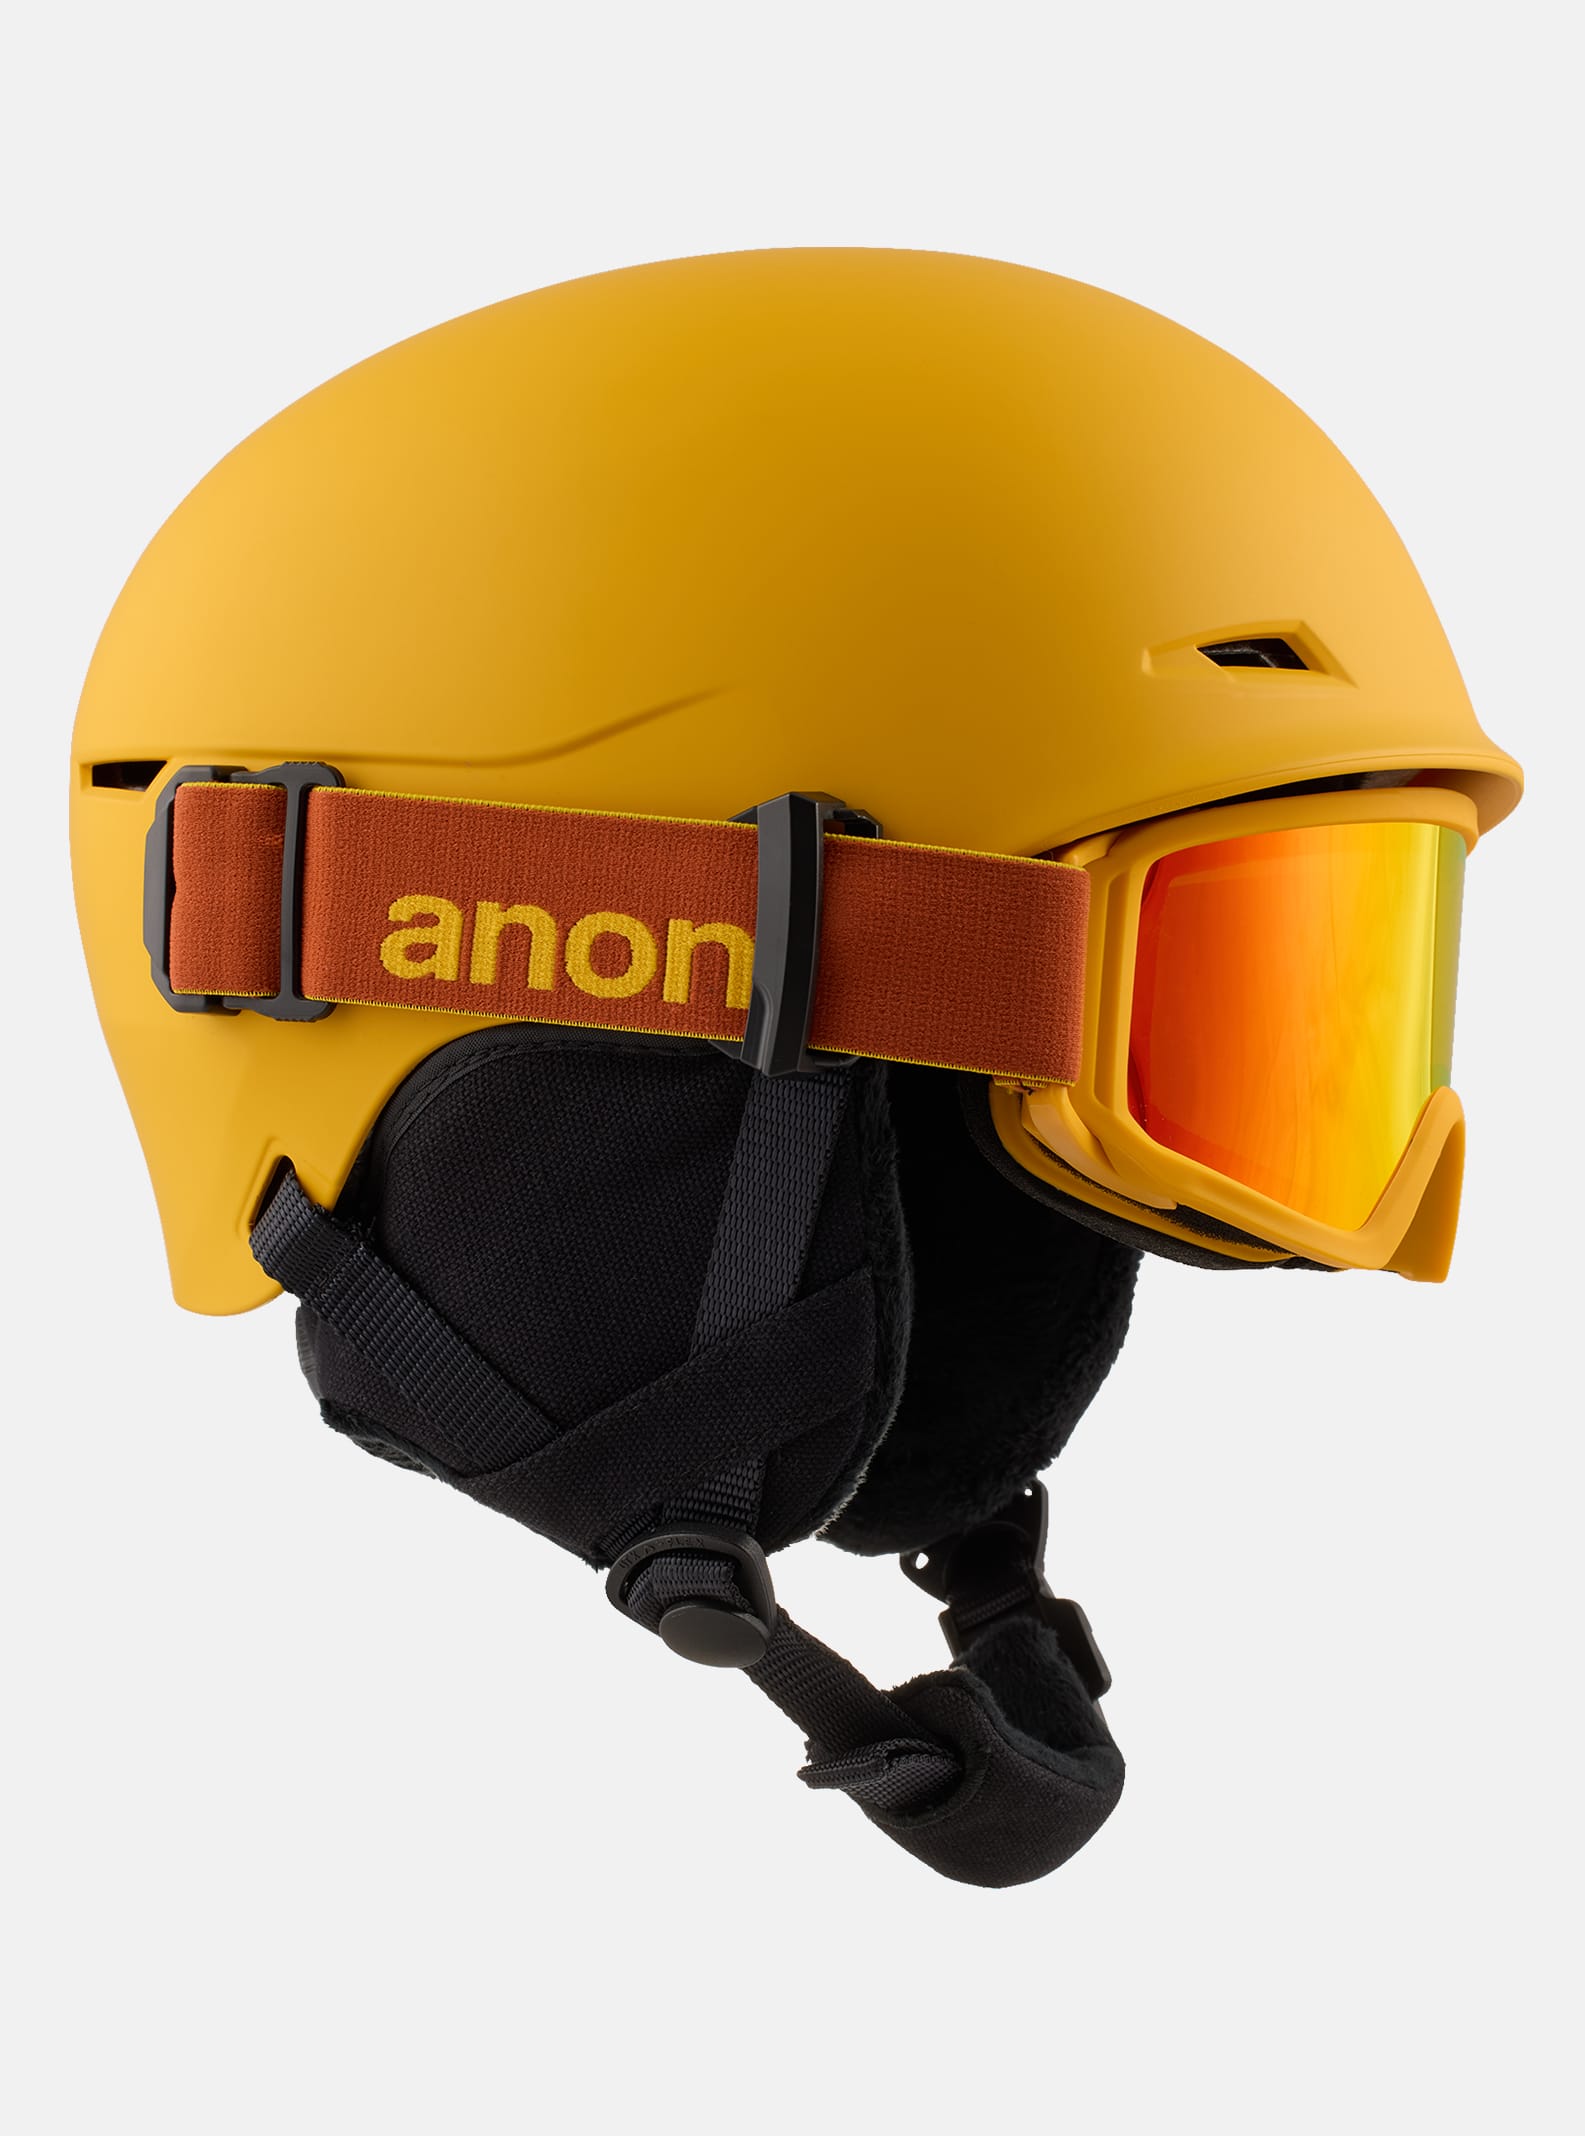 Anon(アノン) ヘルメット スキー スノーボード ジュニア